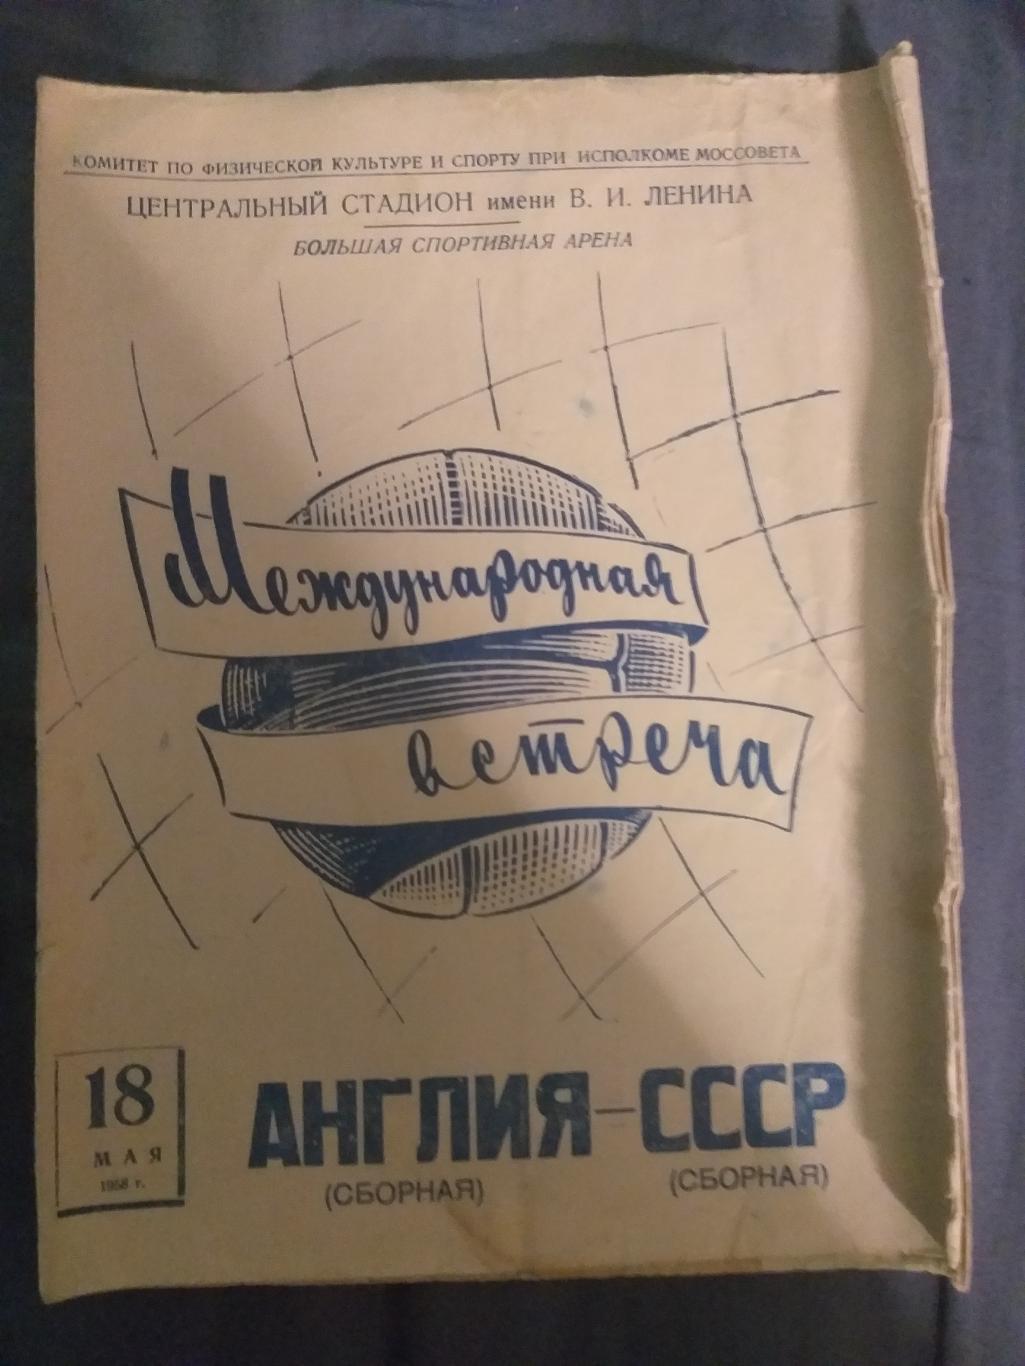 Сборная СССР- Сборная Англии программка 18.05.1958